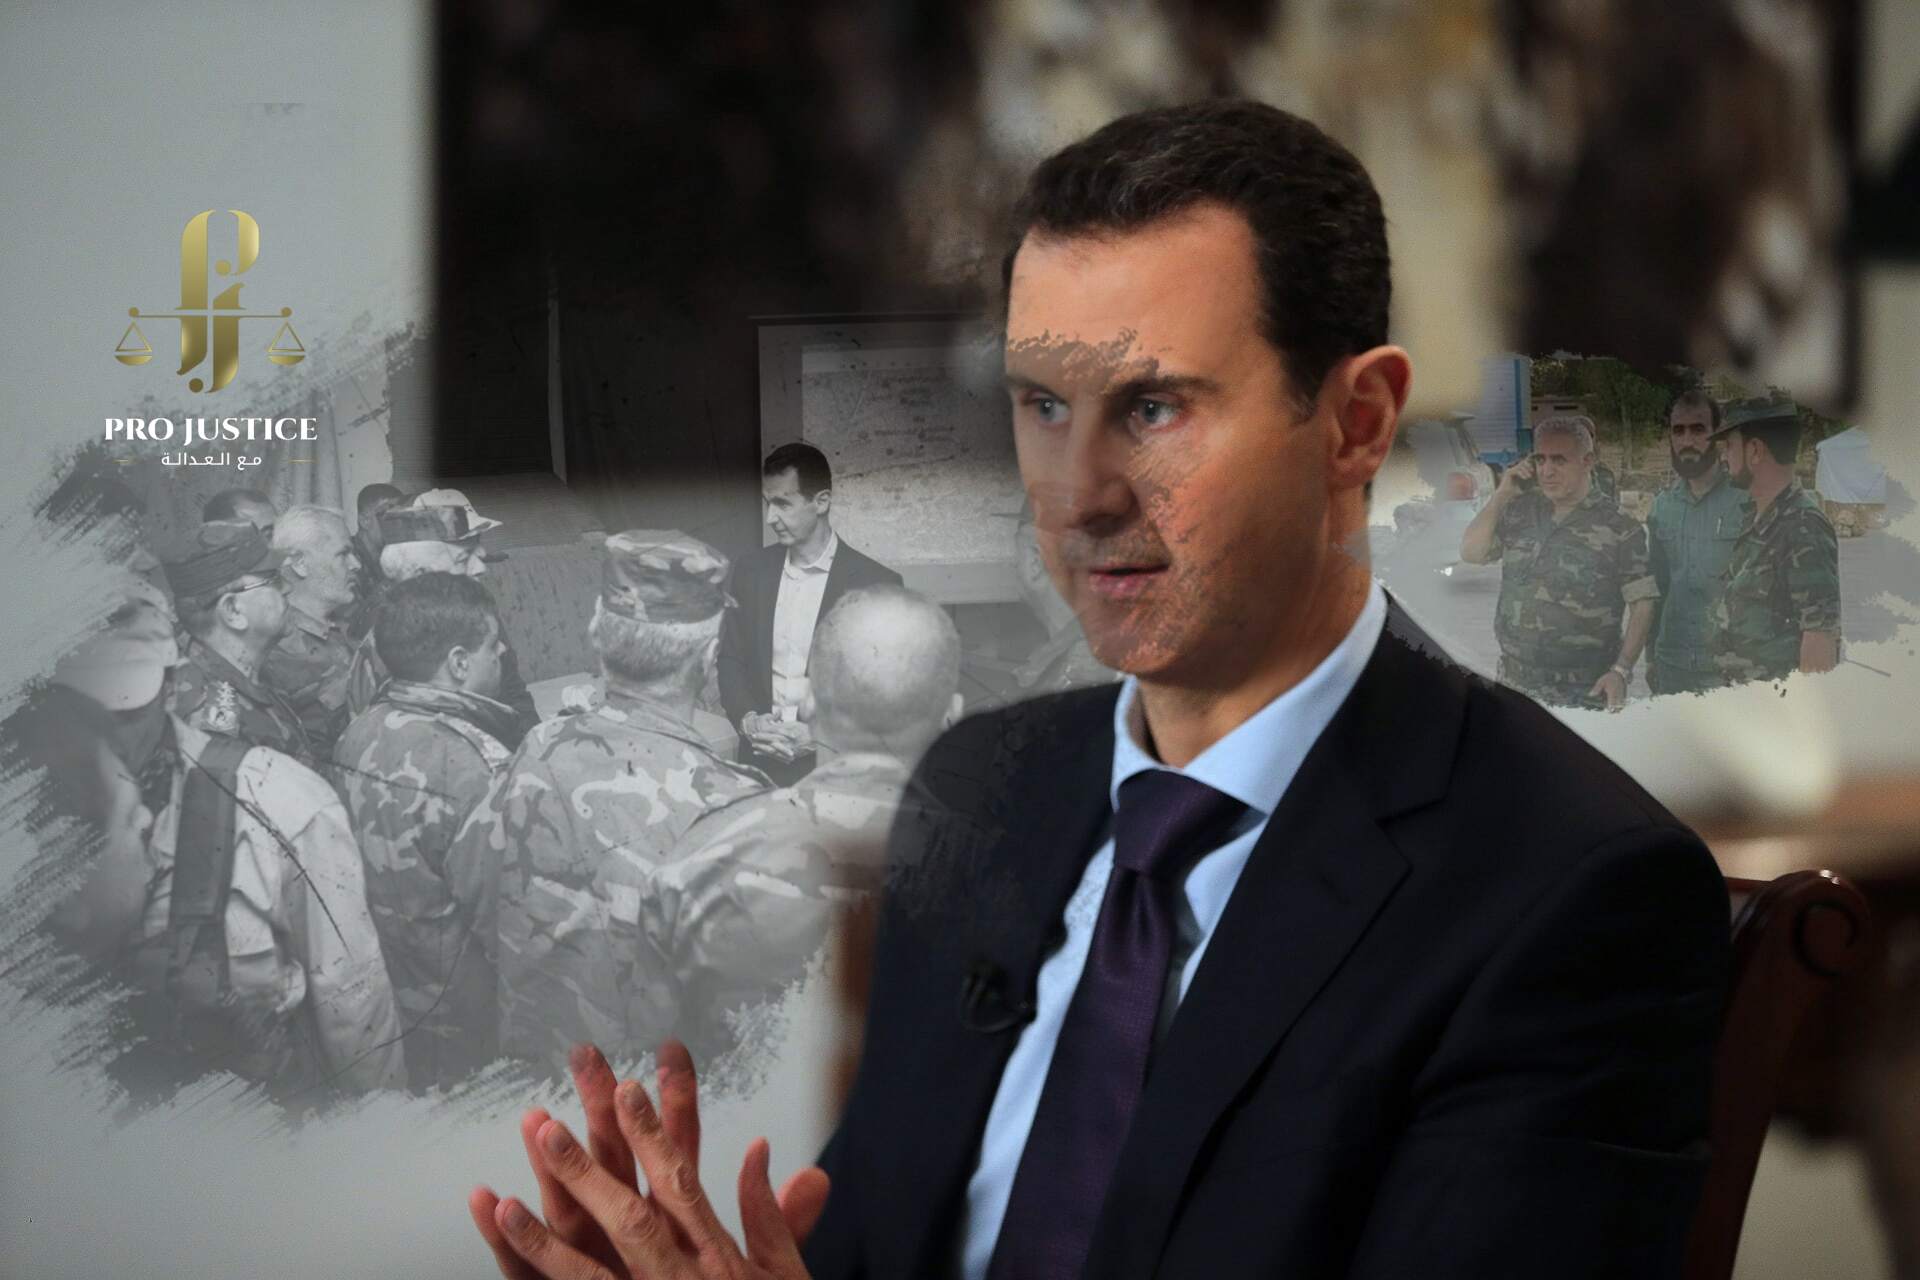 يجب أن يواجه “الأسد” المحاكمة على جرائمه ضد الشعب السوري